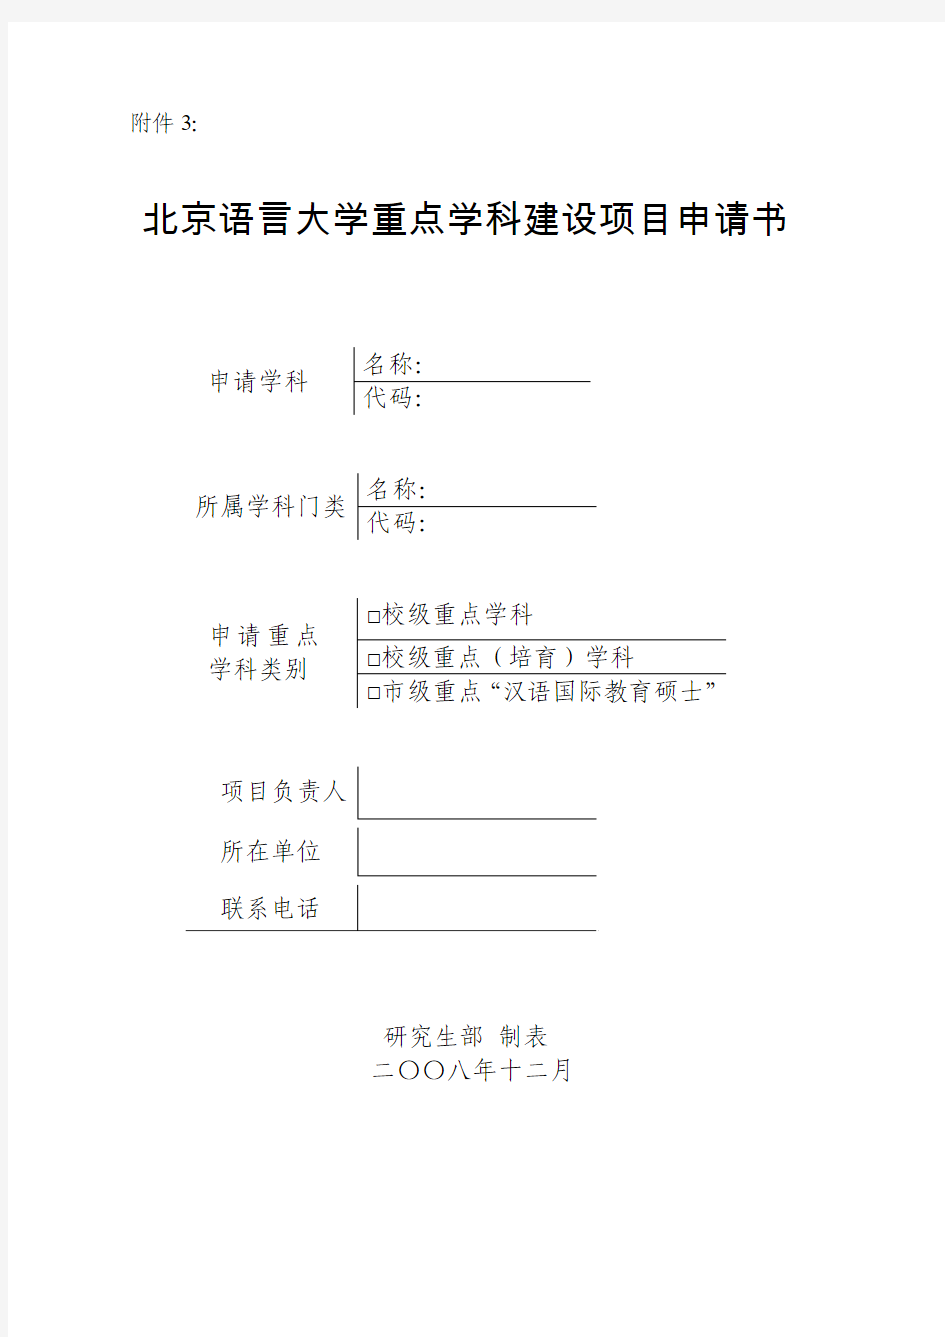 北京语言大学 重点学科建设项目申请书